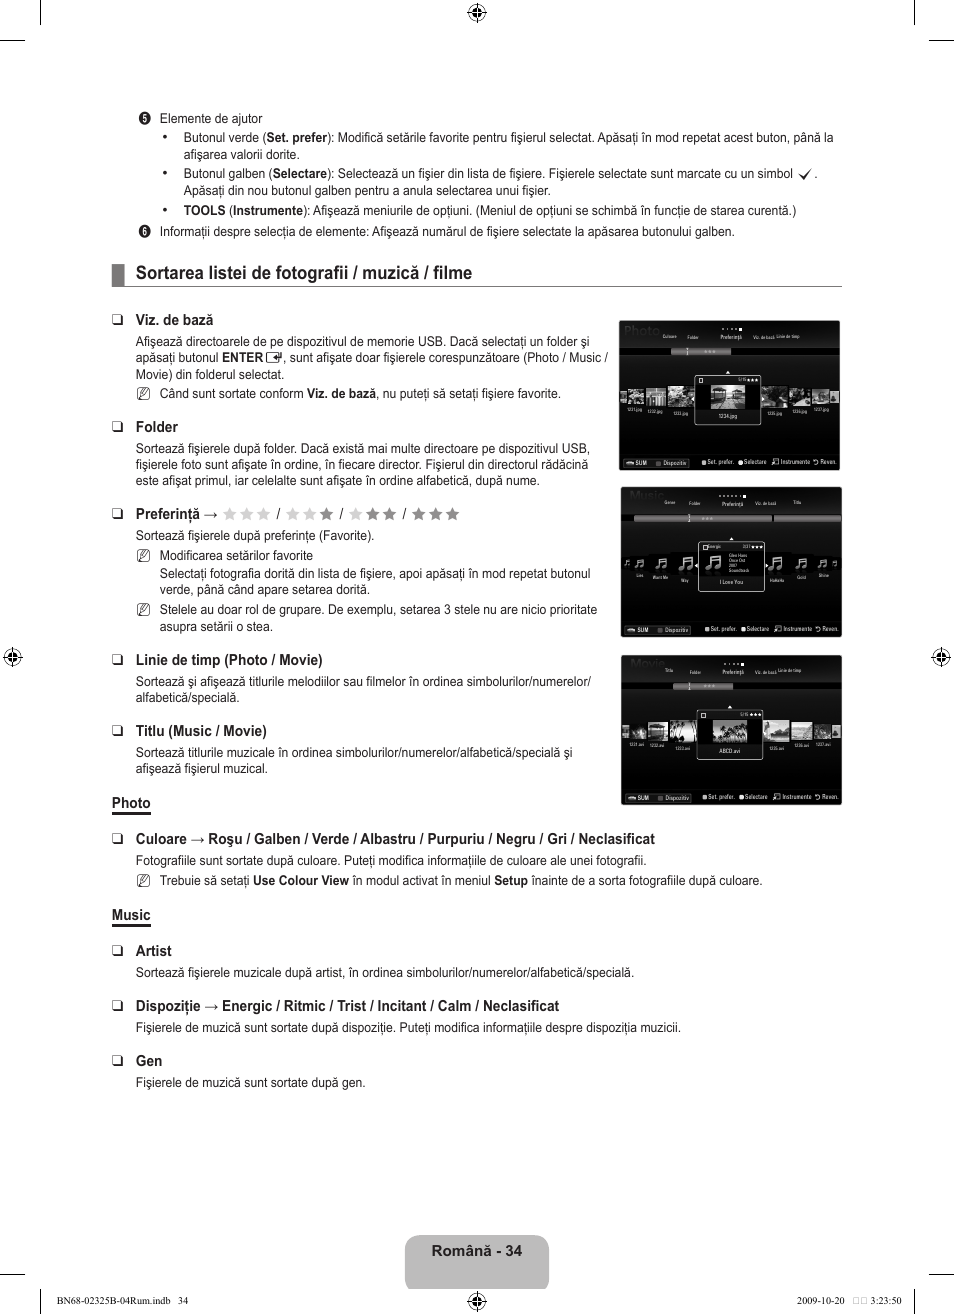 Sortarea listei de fotografii / muzică / filme, Română, Viz. de bază | Folder, Preferinţă → fff / ff f / f ff / fff, Linie de timp (photo / movie), Titlu (music / movie), Music artist | Samsung LE37B650T2W User Manual | Page 576 / 680